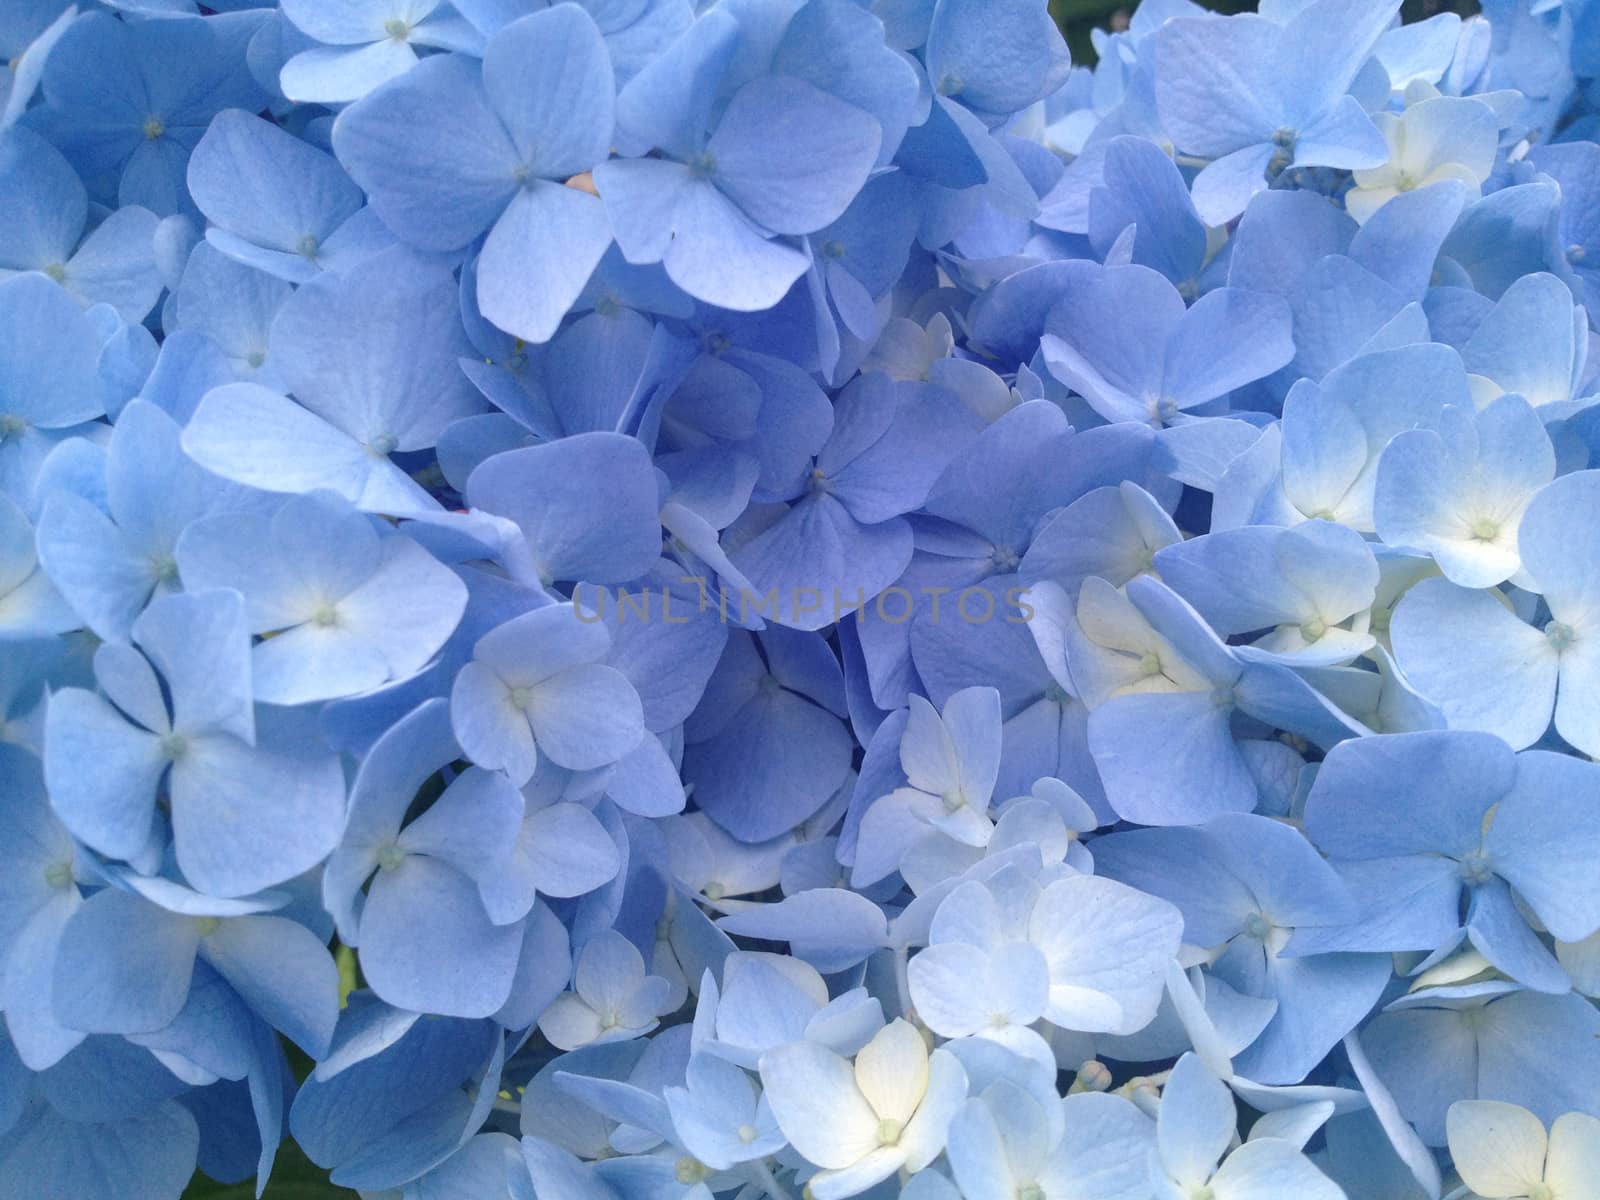 Blue hydrangea by mmm